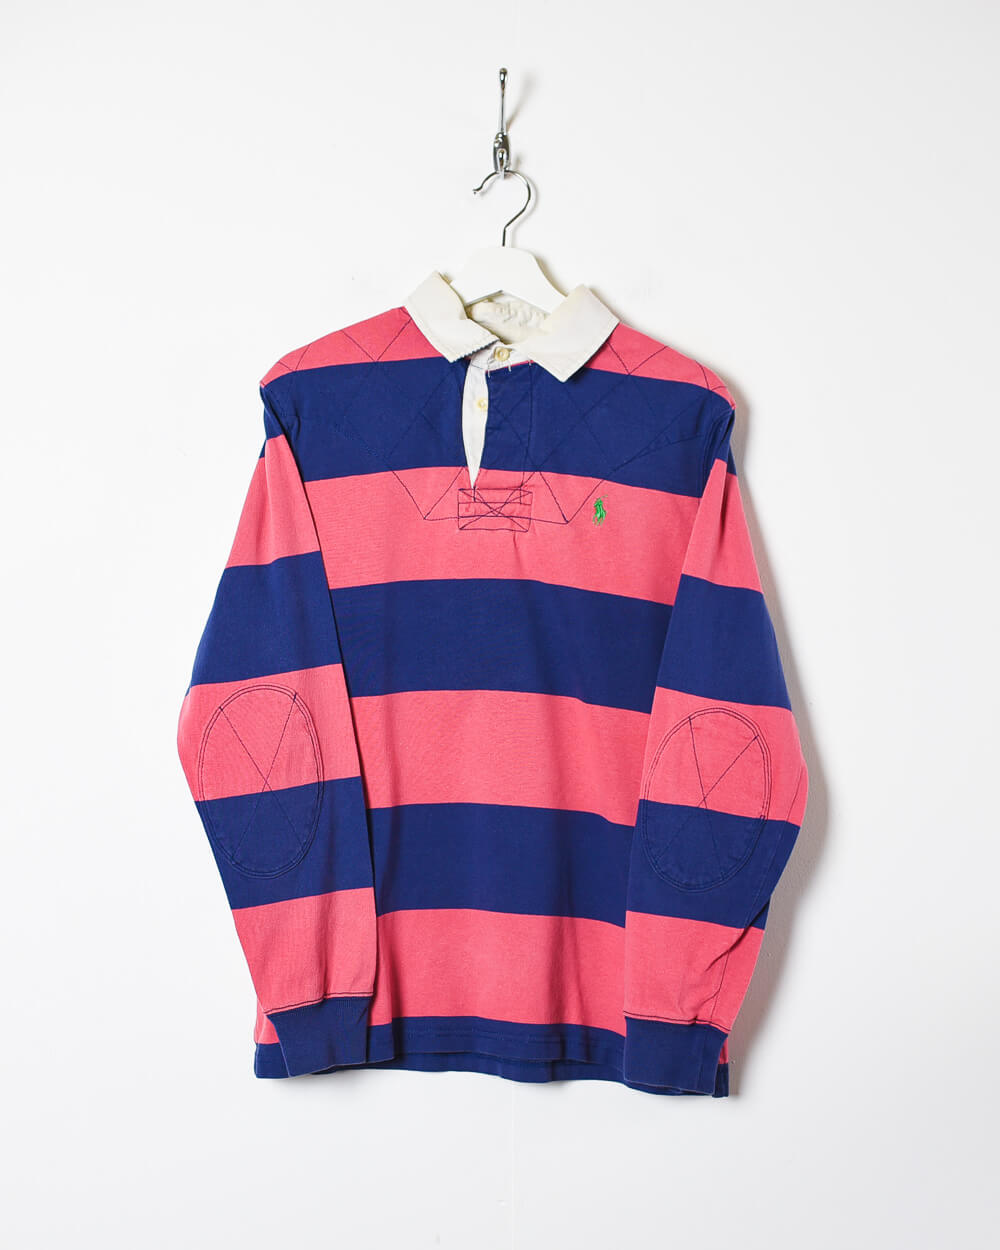 Pink Polo Ralph Lauren Rugby Shirt - Medium